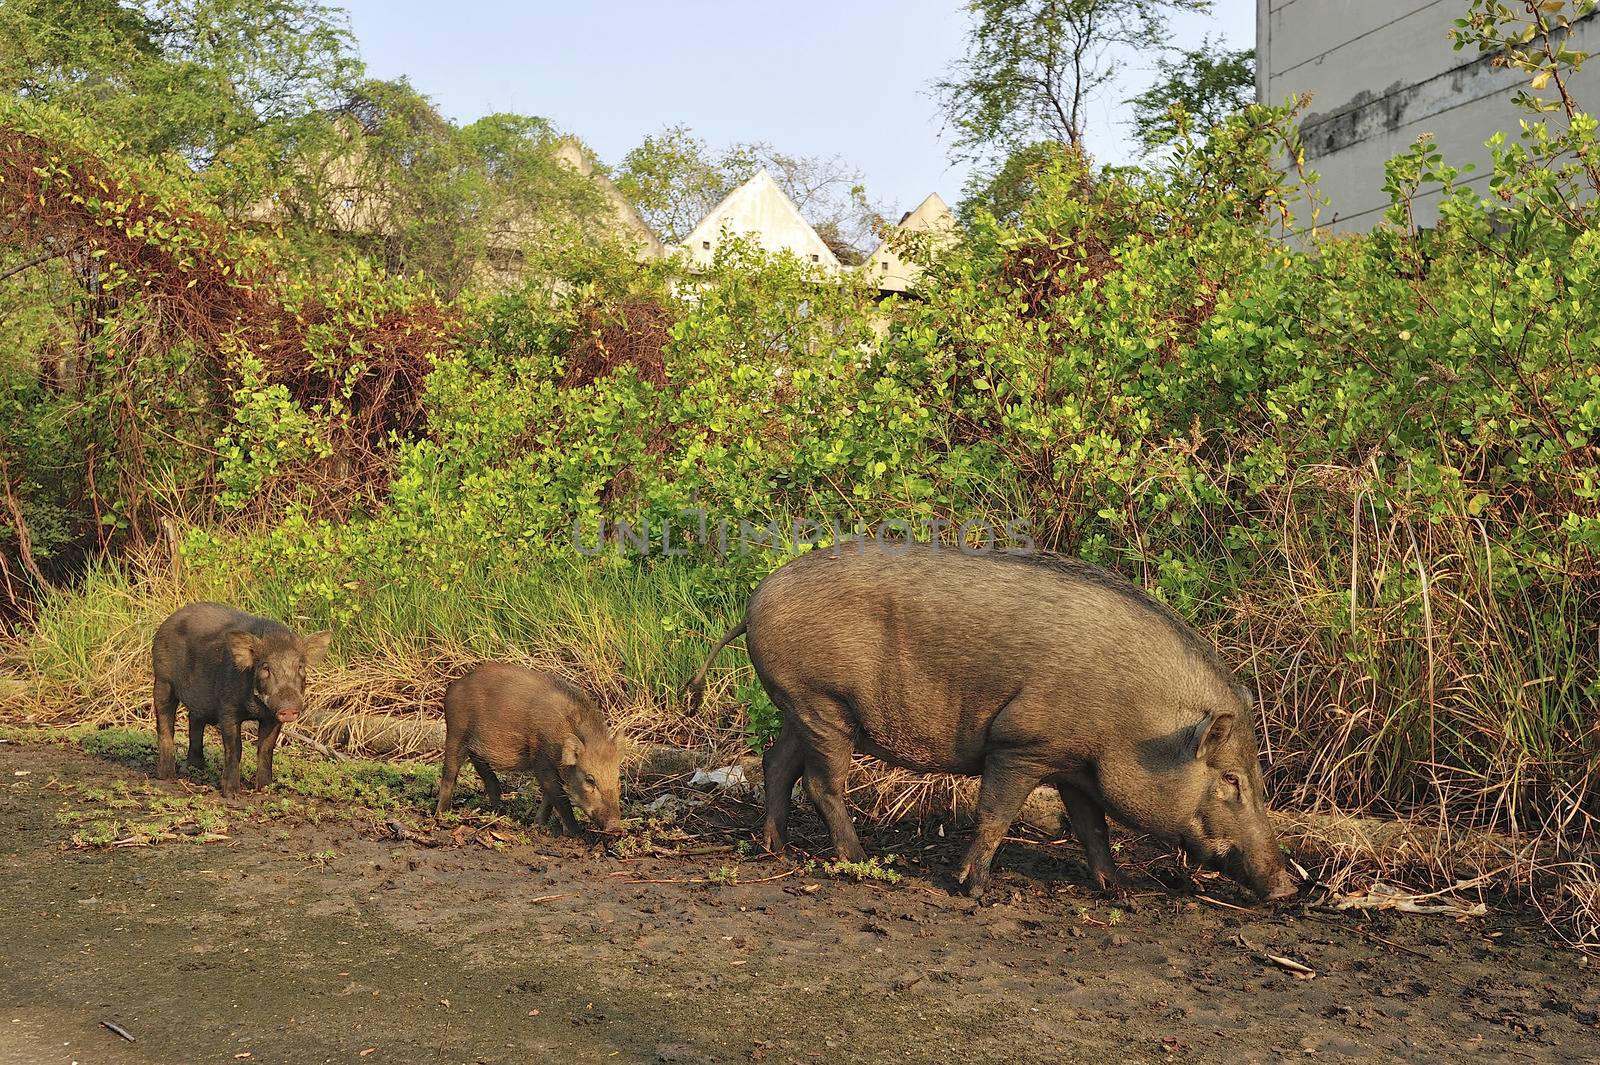 Wild pig in abandon village